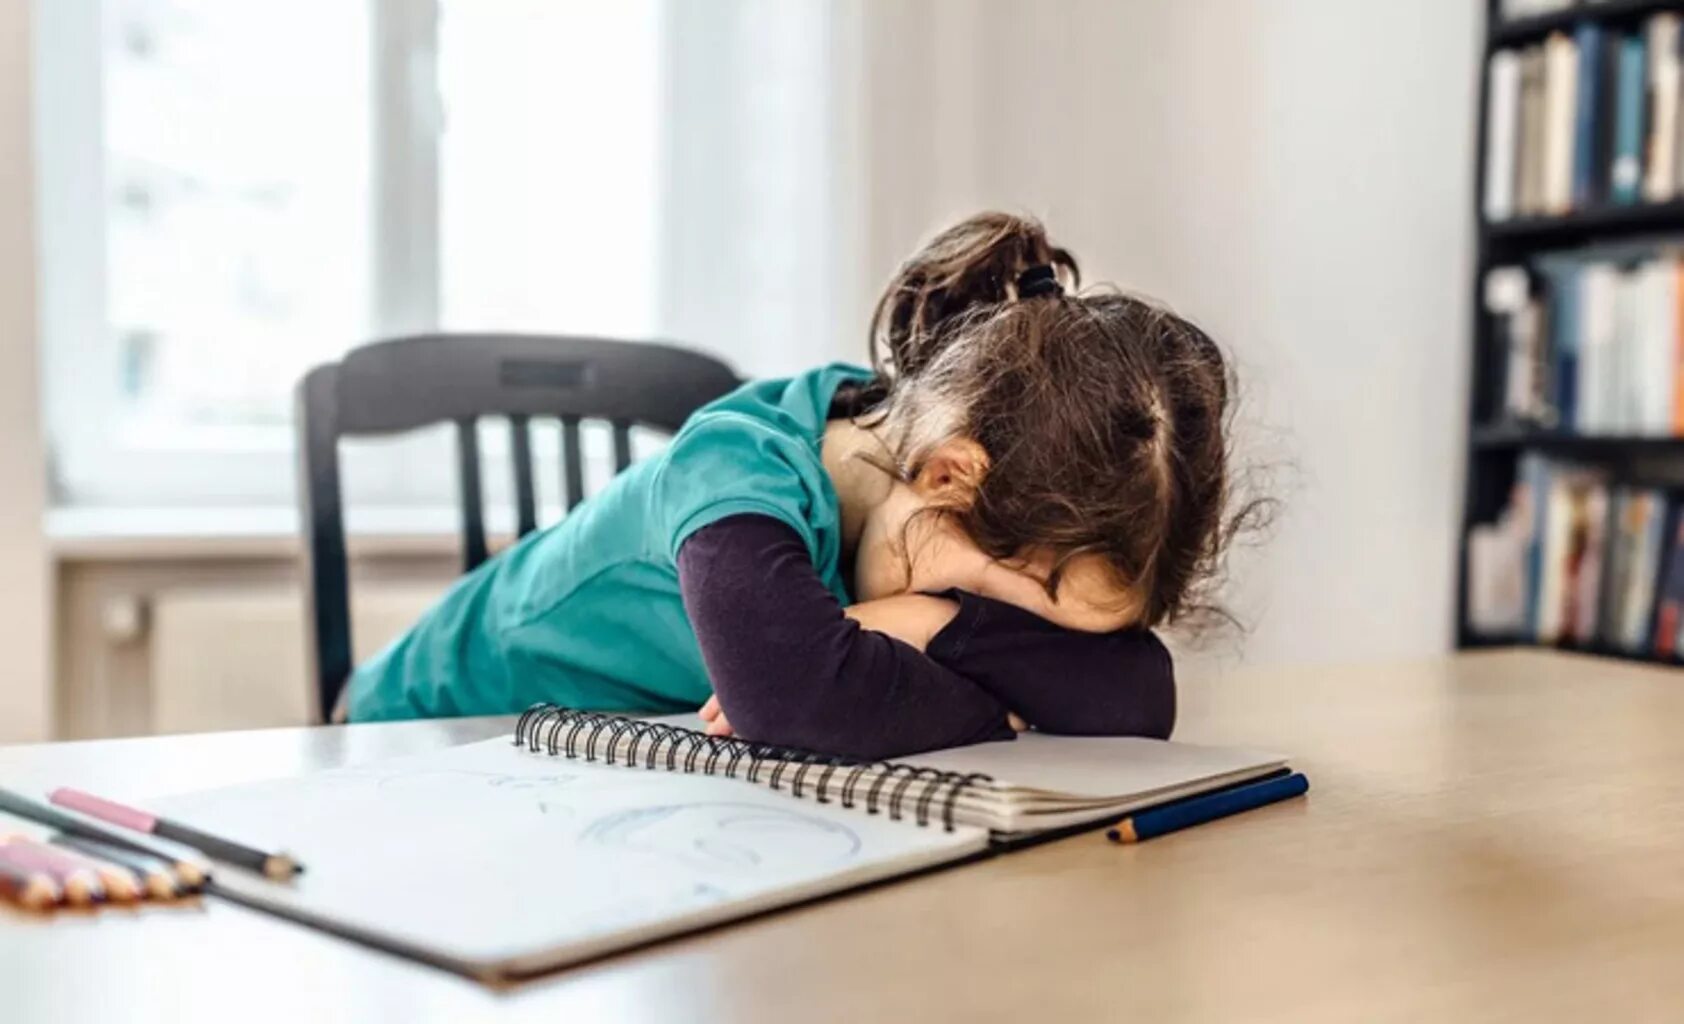 Маленькая девочка делает уроки. Уставший ребенок. Утомление детей. Ученик устал. Утомляемость школьников.